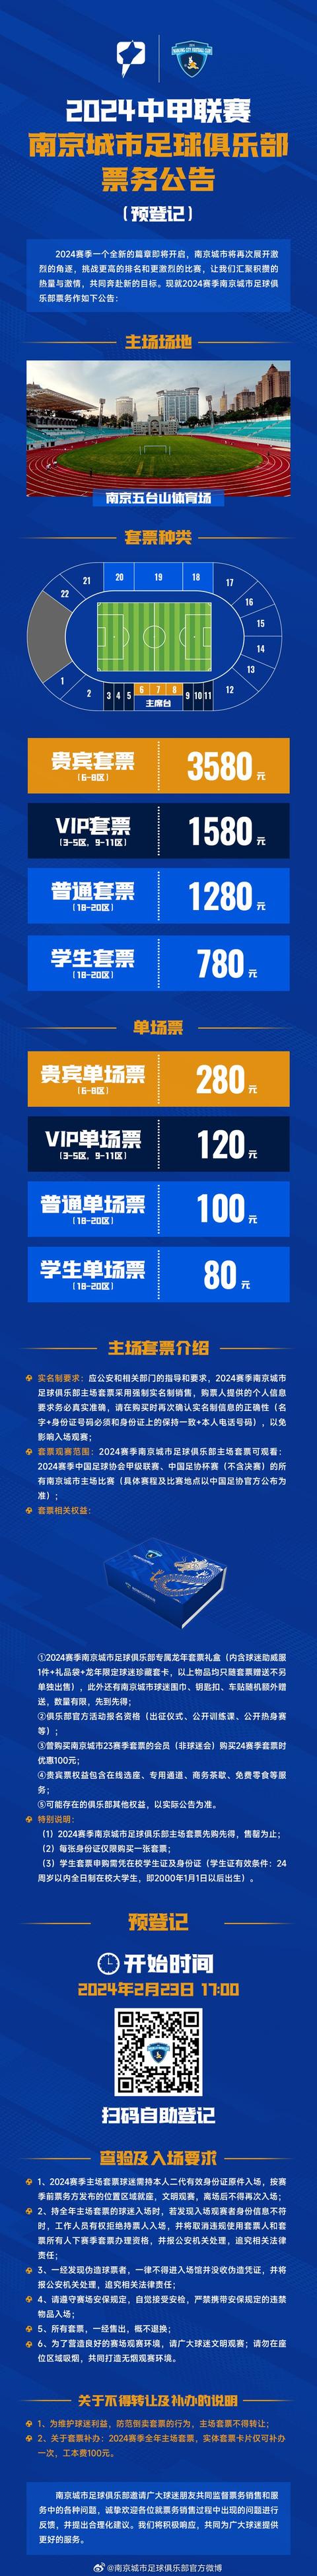 中甲南京城市公布季票价格：学生票780元，贵宾套票3580元(足球价格表)